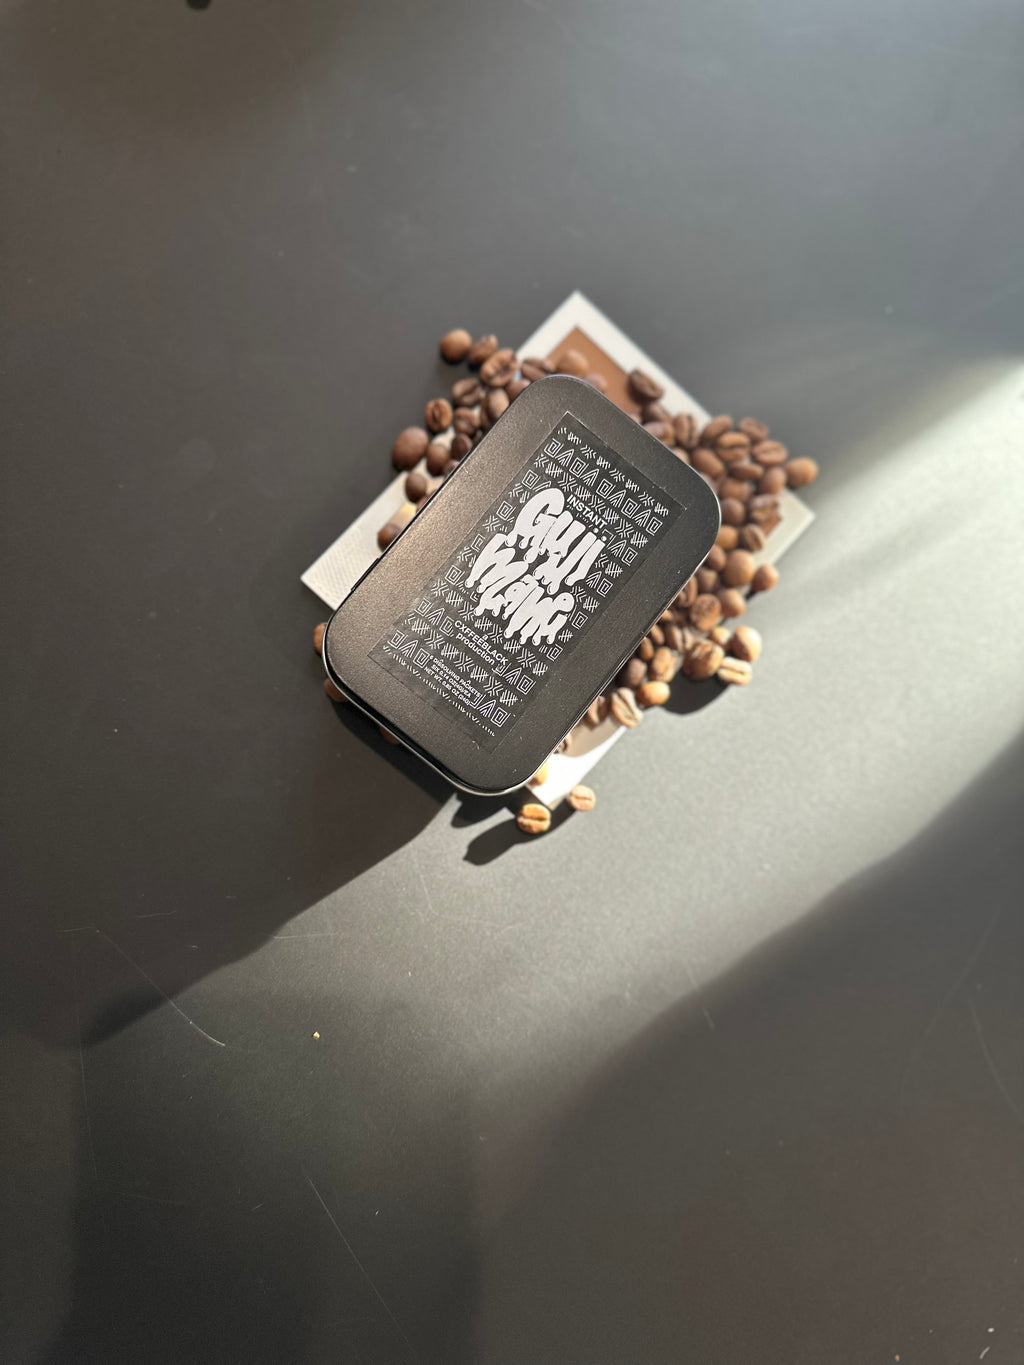 Cxffeeblack Instant Espresso Packs// Guji Mane